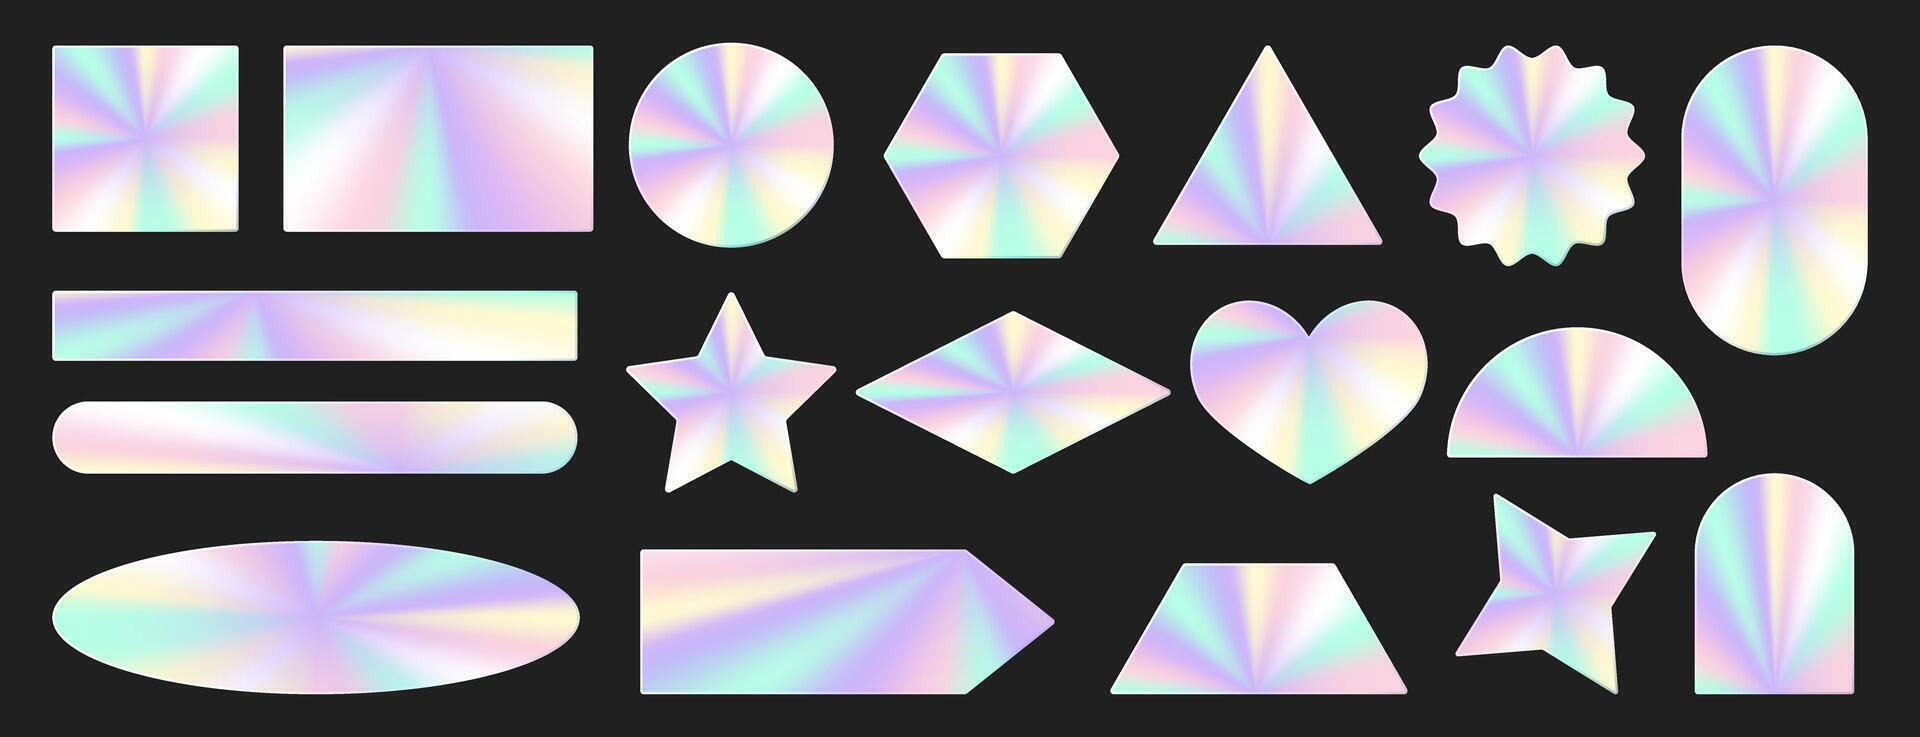 uppsättning av holografiska klistermärken. hologram etiketter av annorlunda geometrisk former med regnbågsskimrande folie lim filma. färgad tom regnbåge skinande emblem, siffror. vektor illustration.